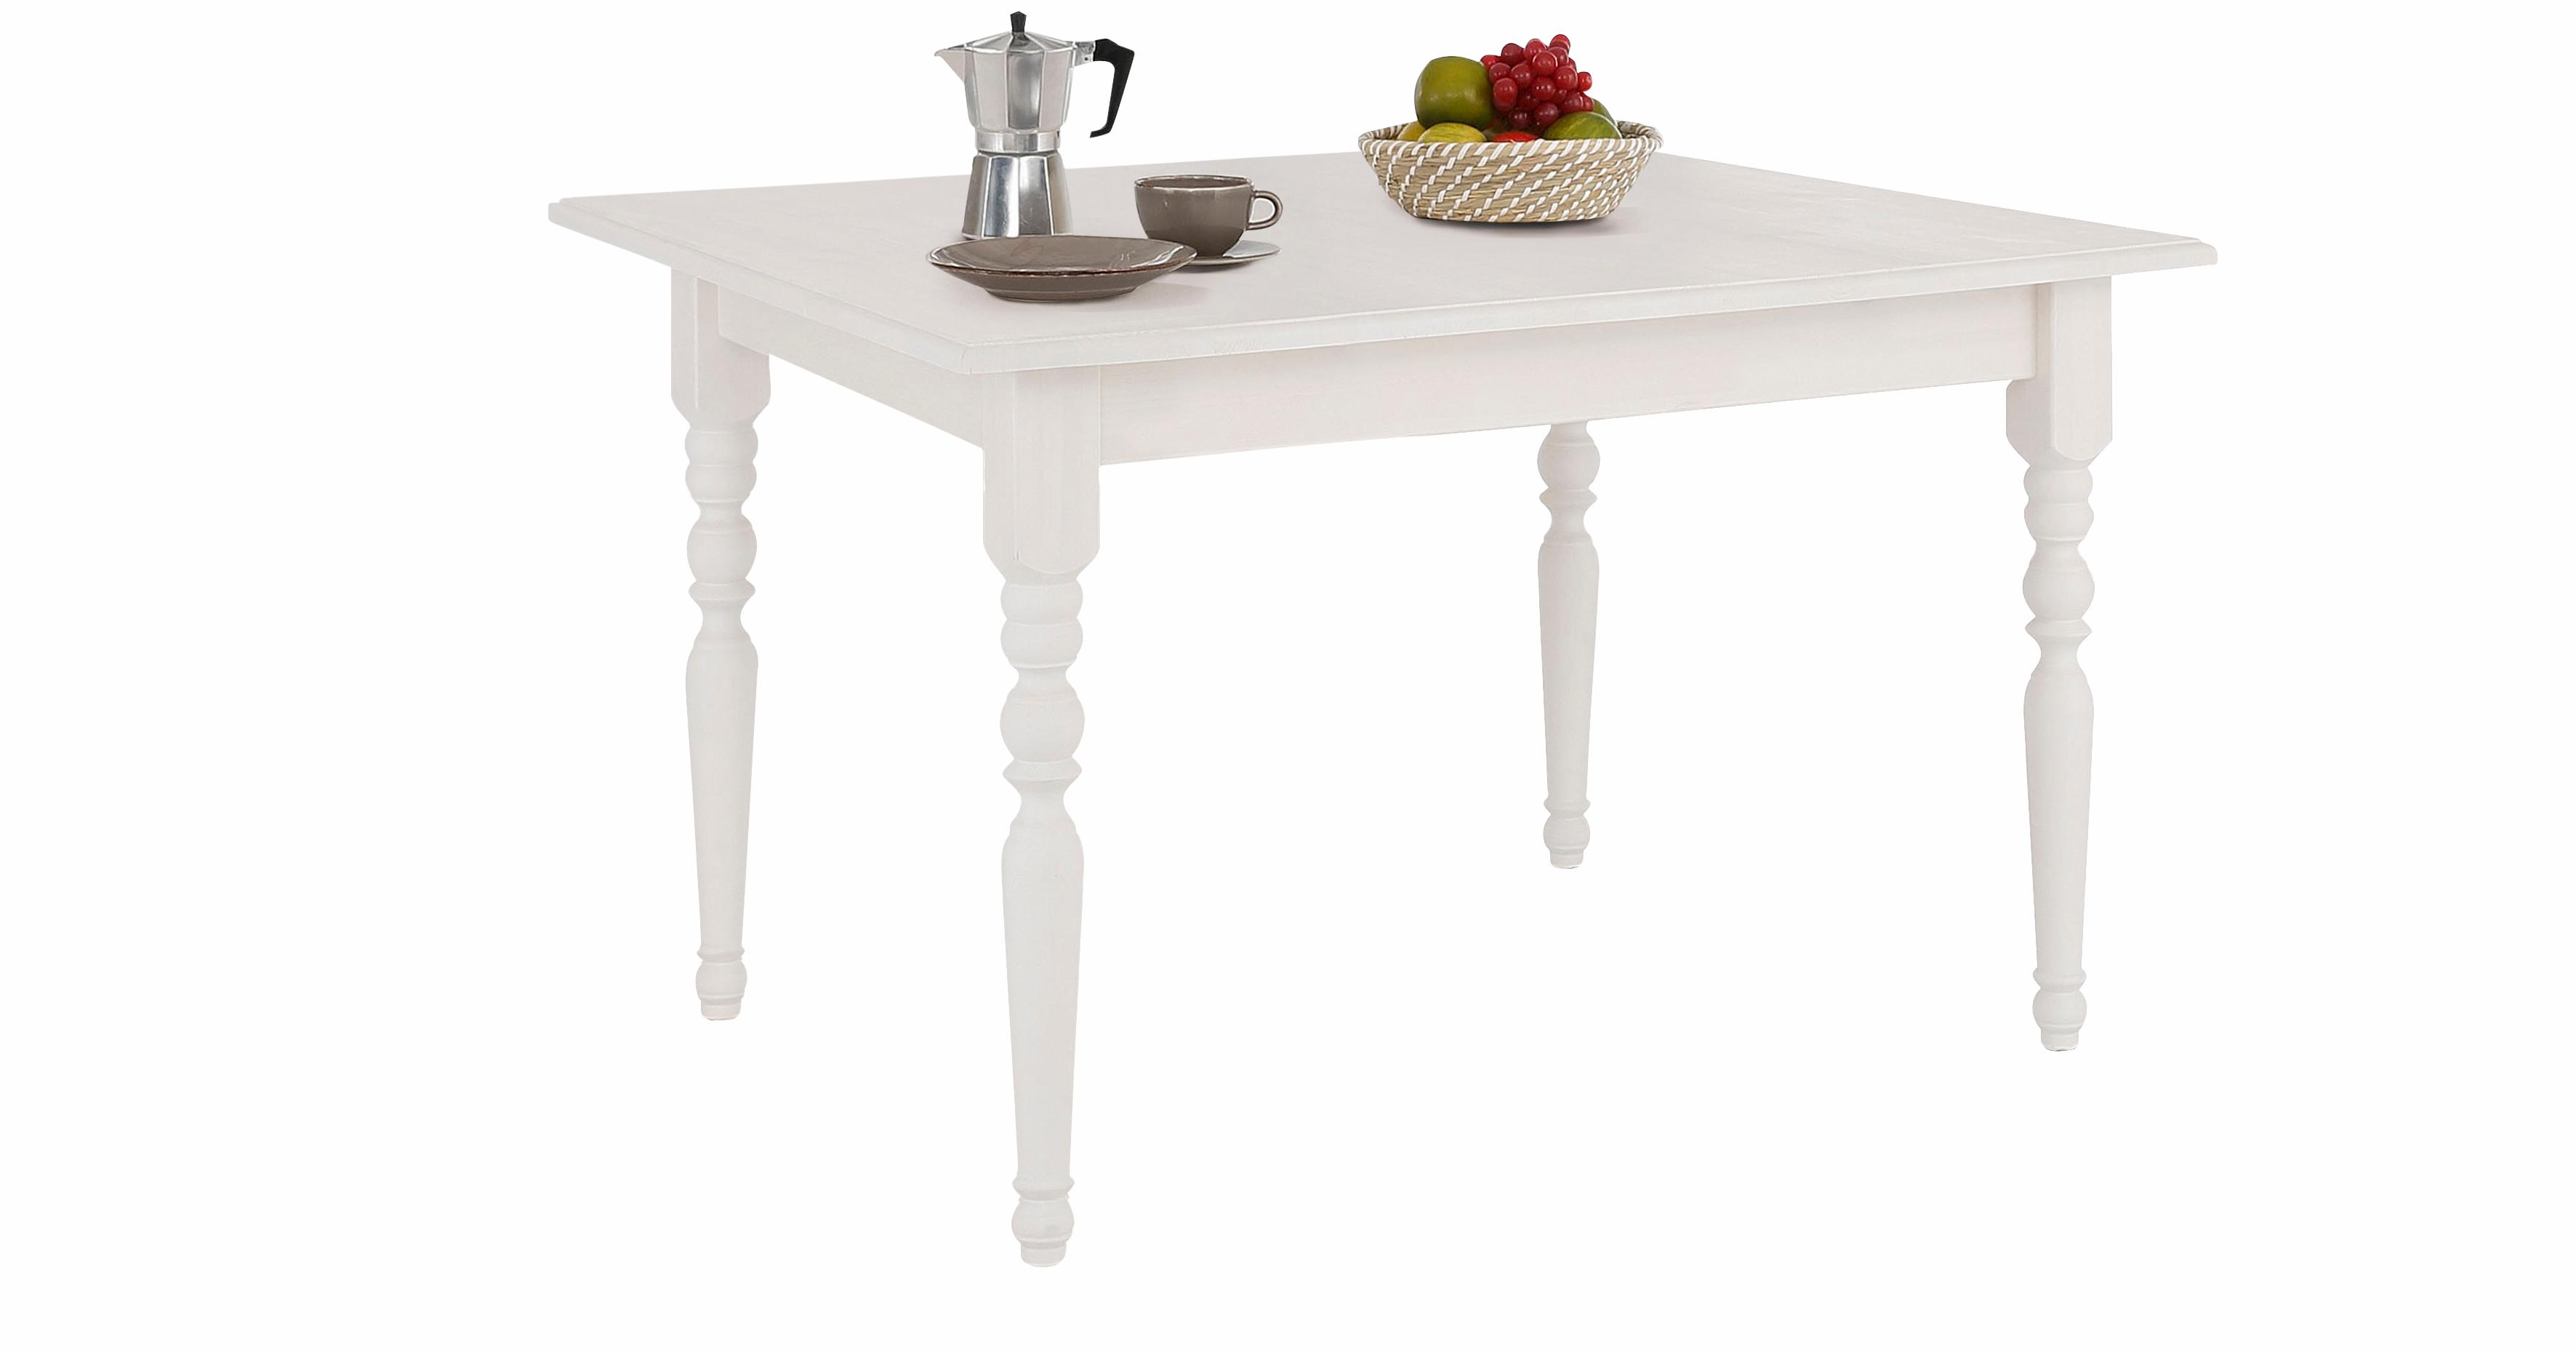 Home affaire Esstisch Merida, aus schönem massivem Kiefernholz, in unterschiedlichen Tischbreiten erhältlich, 140 cm-Tisch mit Auszug auf 179 cm